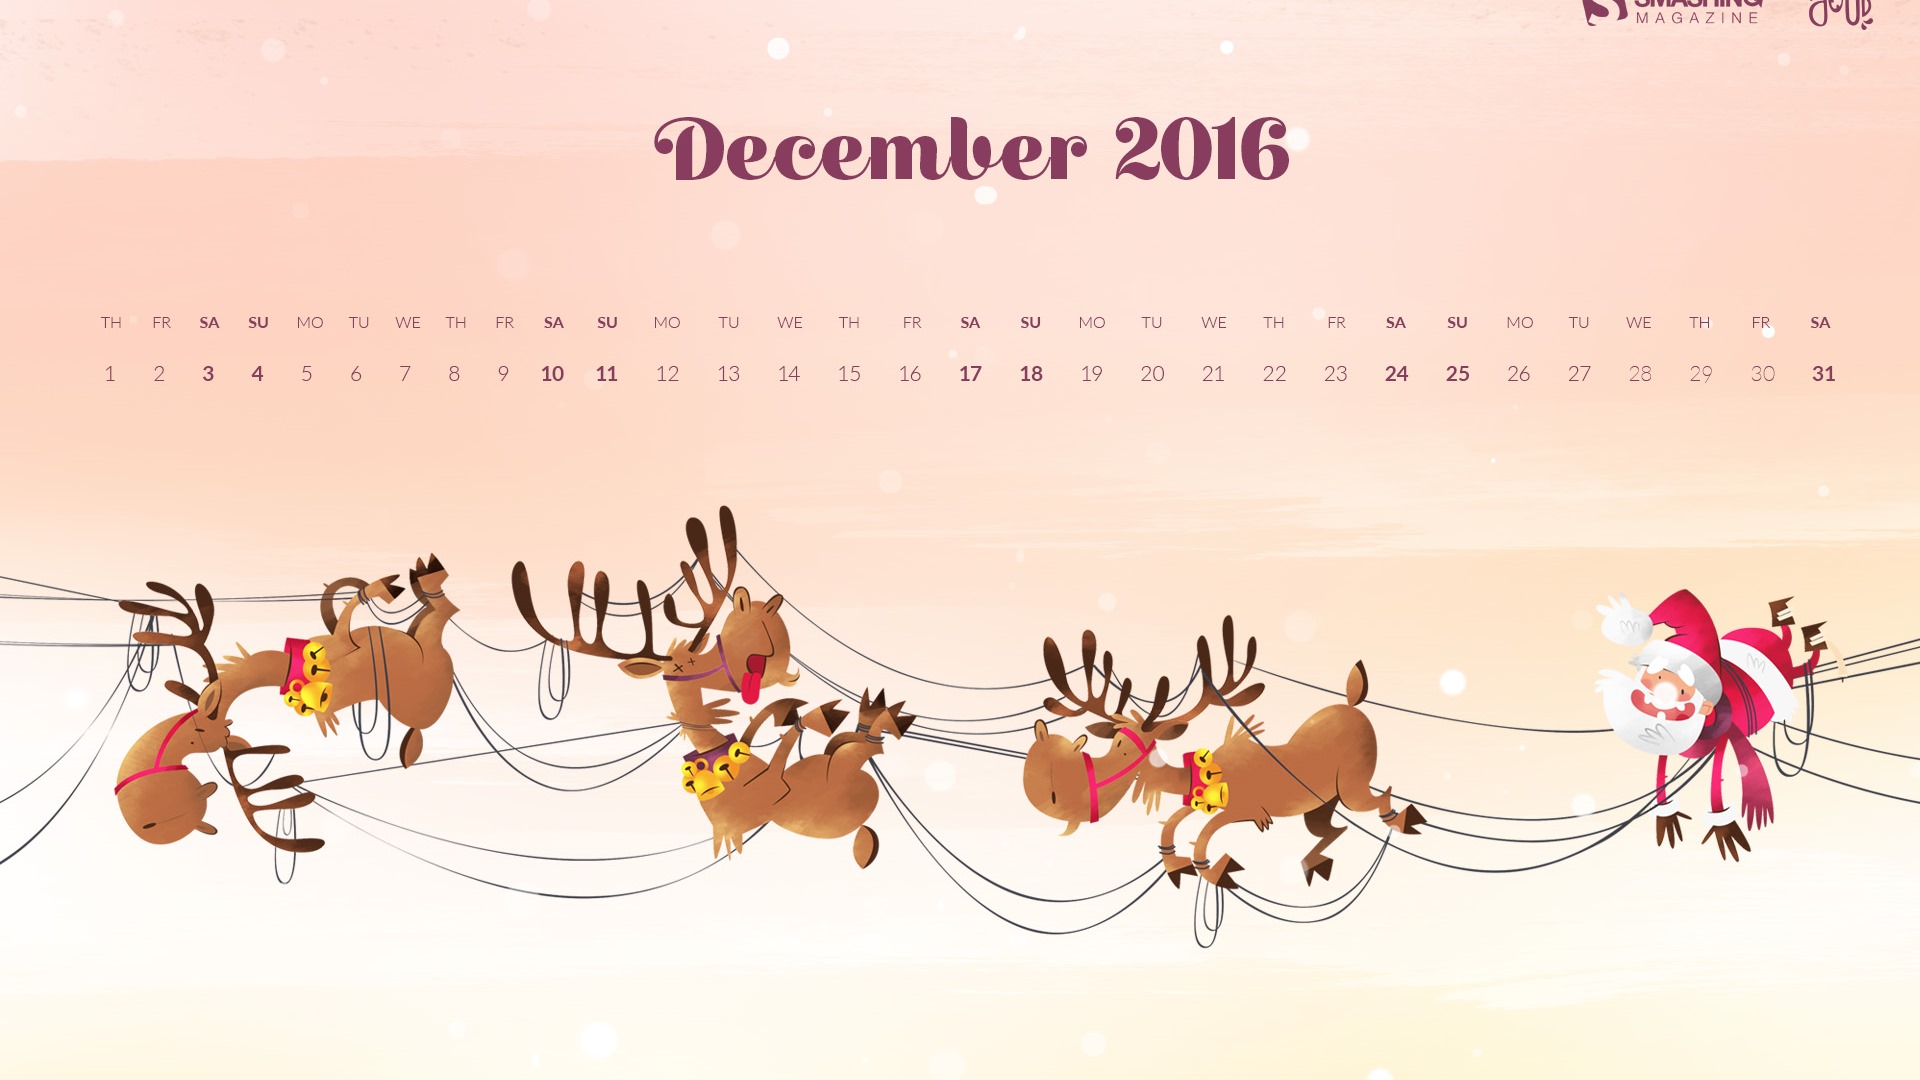 December 2016 Christmas theme calendar wallpaper (1) #13 - 1920x1080